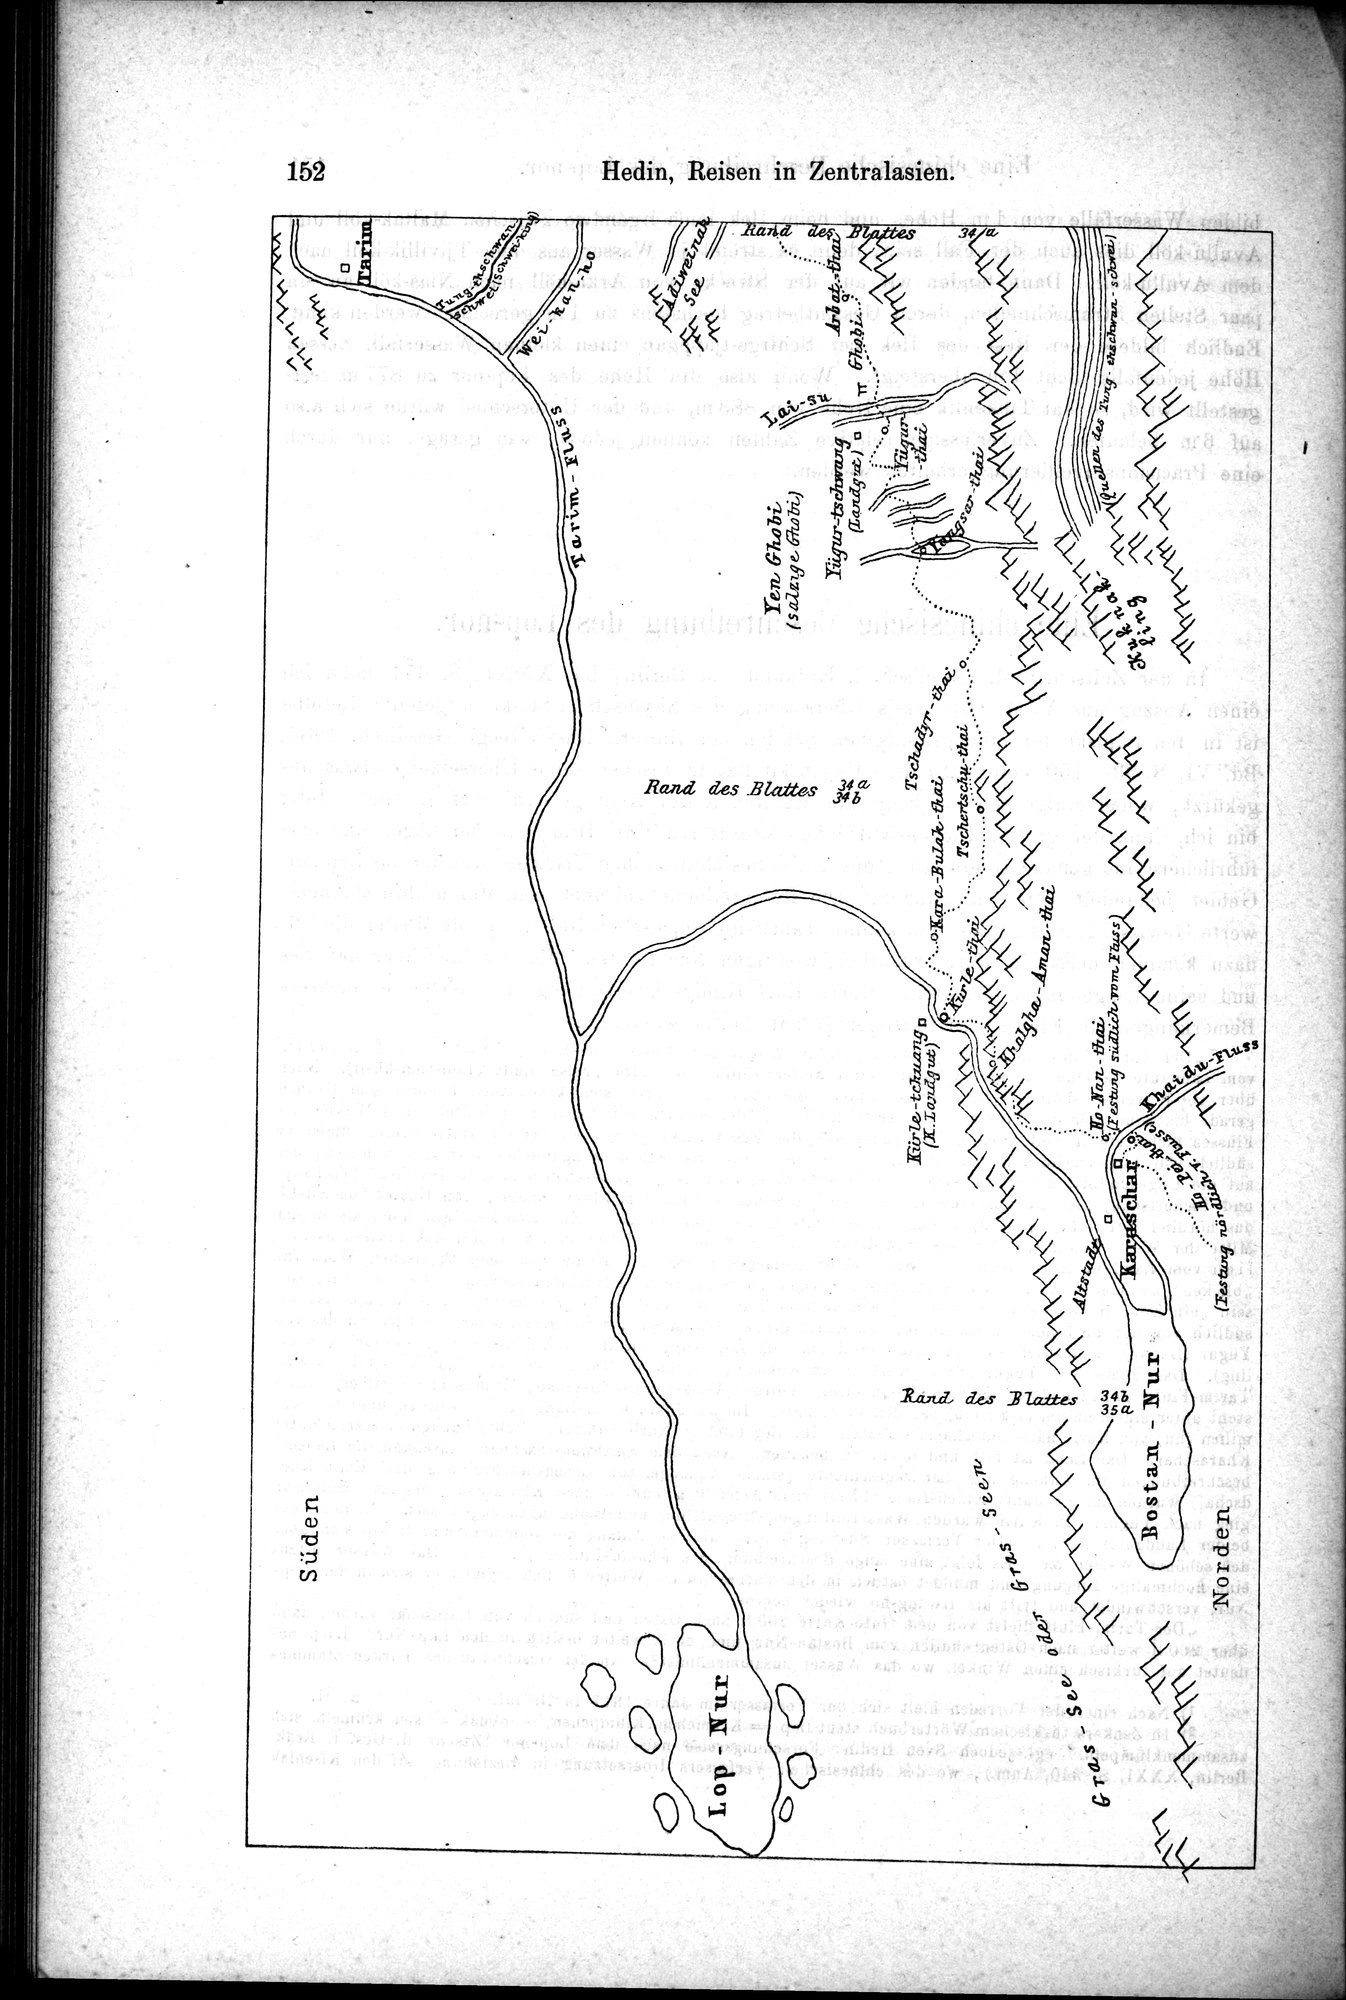 Die Geographische-Wissenschaftlichen Ergebnisse meiner Reisen in Zentralasien, 1894-1897 : vol.1 / Page 164 (Grayscale High Resolution Image)